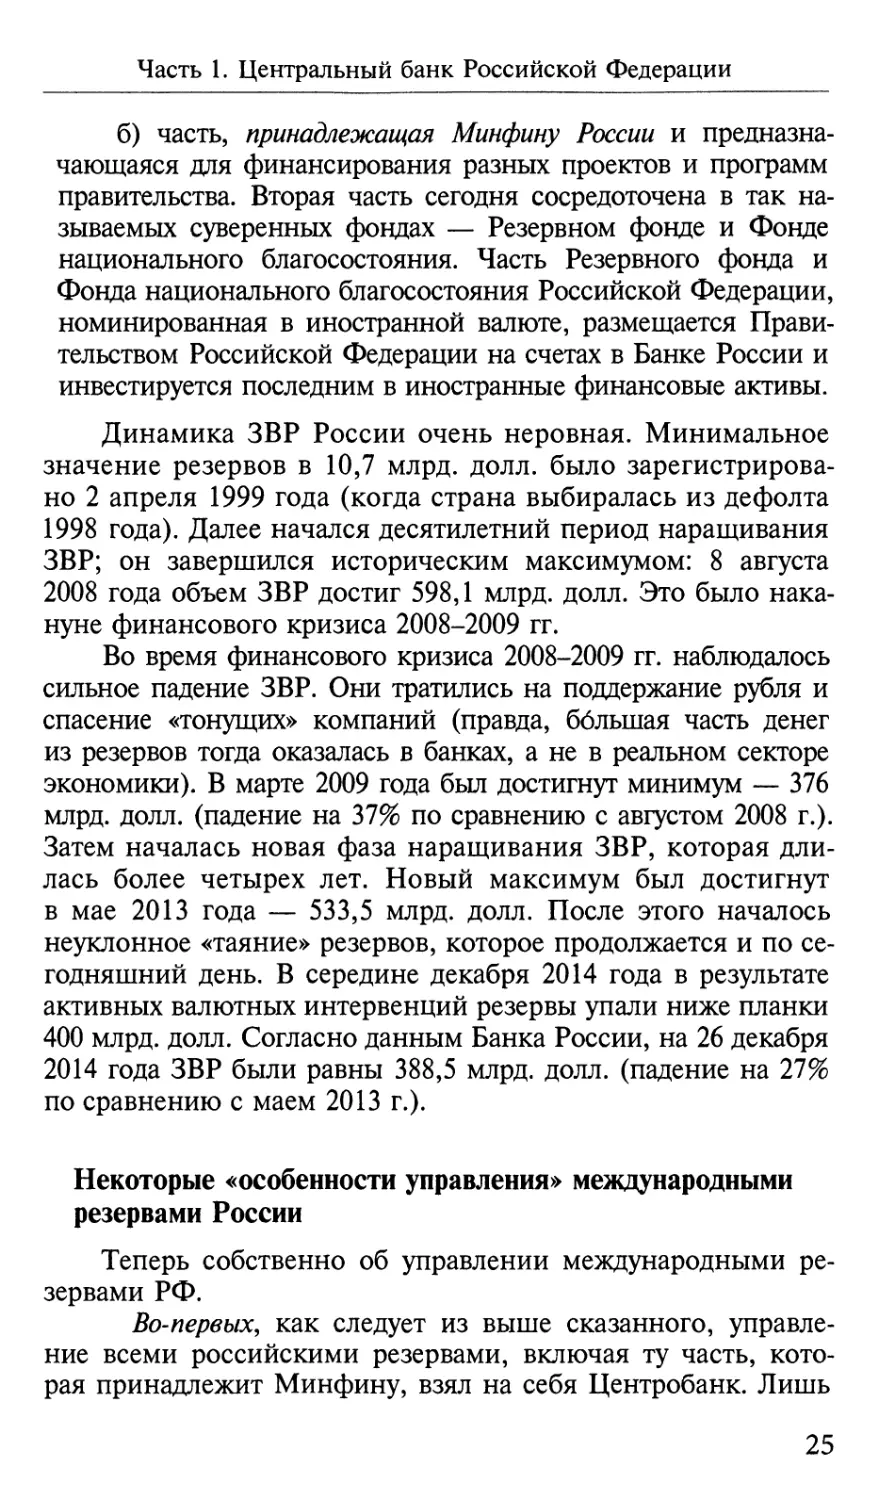 Некоторые «особенности управления» международными резервами России